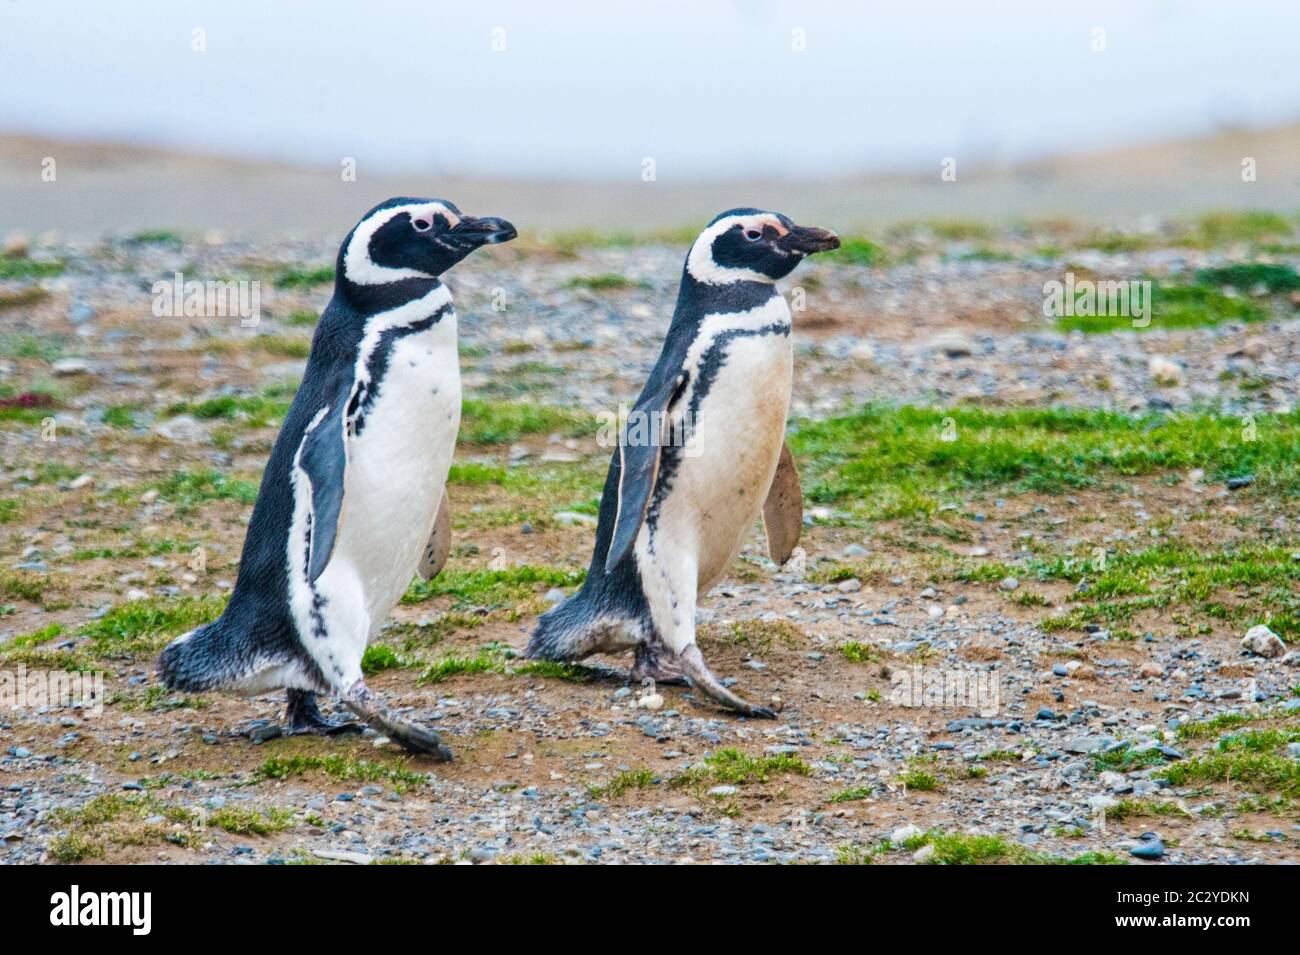 Magellanic penguin (Spheniscus magellanicus) couple walking in barren area, Patagonia, Chile, South America Stock Photo